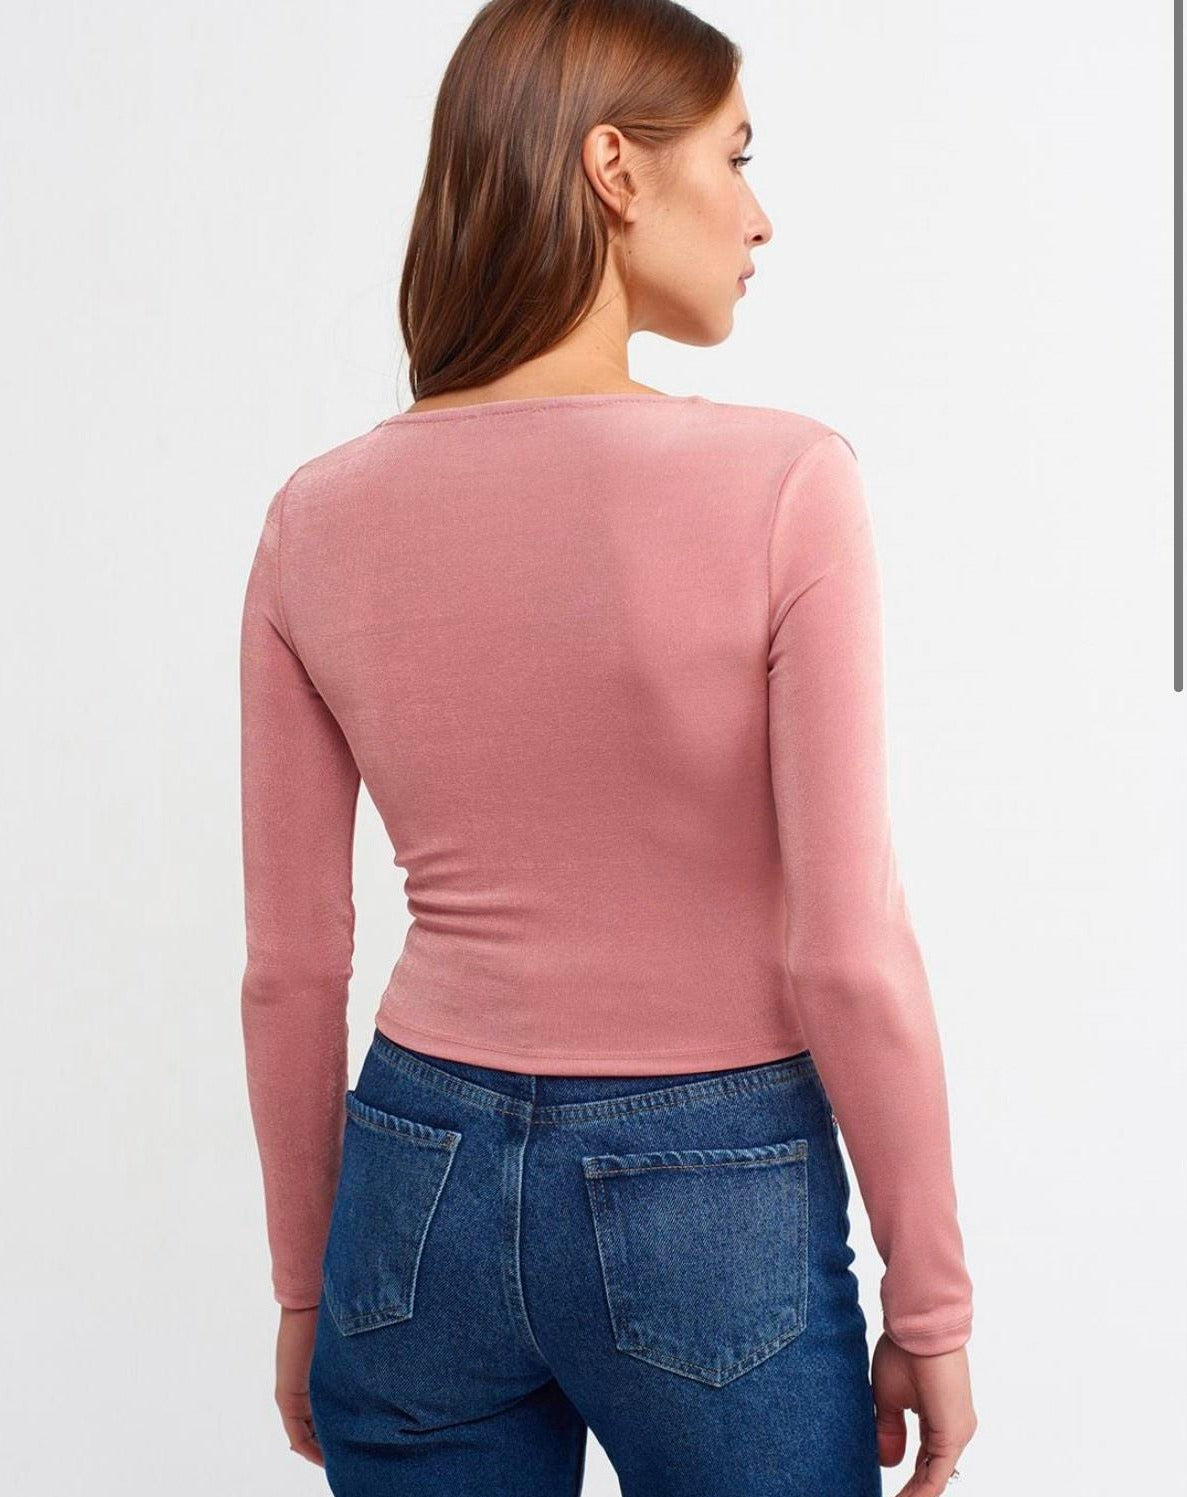 Дамска блуза CARLLA  https://bvseductive.com/products/дамска-блуза-carlla-1  5 % ликра 95 % пoлиестер секси дамска блуза в цвят пудра модел с регулираща се дължина подчертава женските извивки позволява лесно да се комбинира чудесен избор за Вашето секси излъчване красиво предложение за всекидневна визия